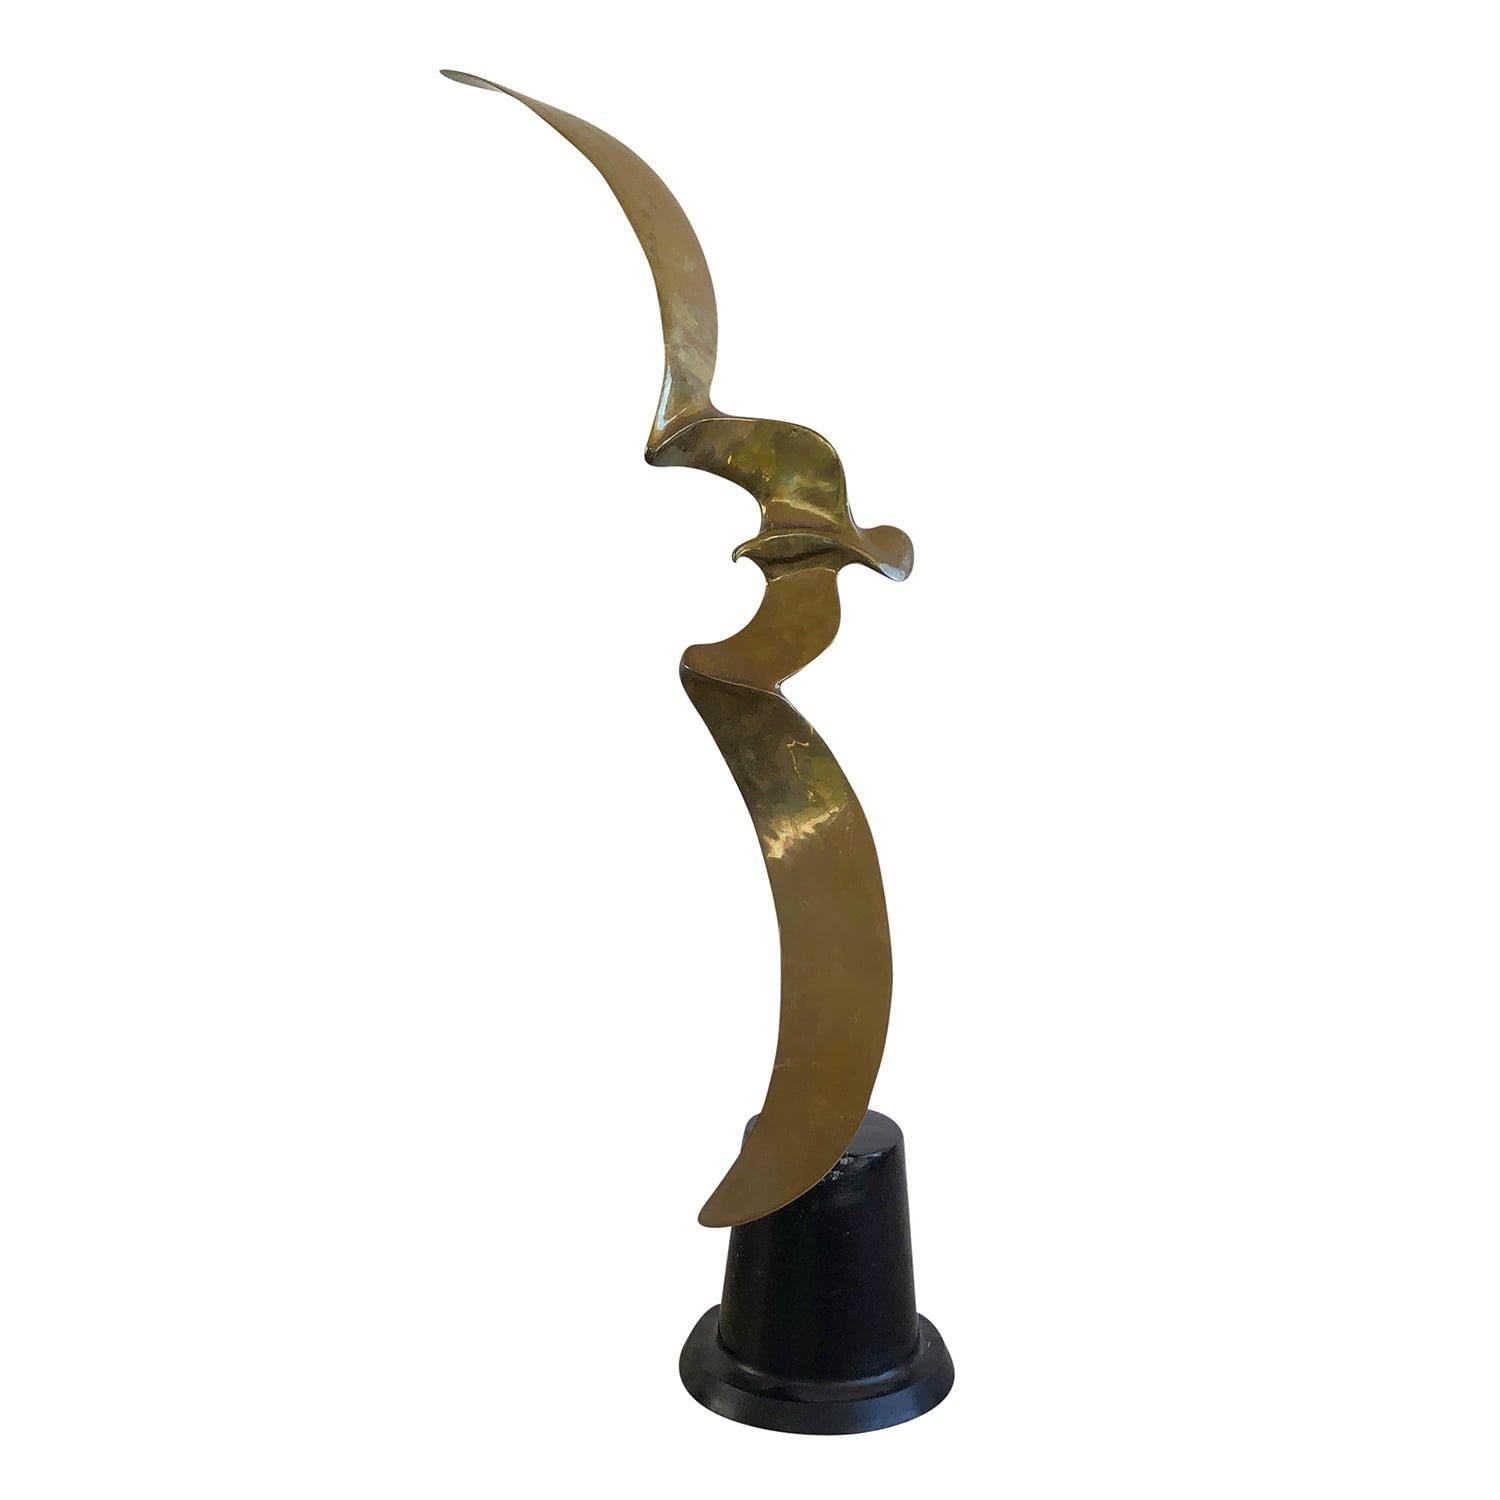 Sculpture thaïlandaise abstraite du milieu du siècle, en bronze travaillé à la main, en bon état. L'oiseau est en position de vol, debout sur une base ronde en bois noir. Conçu et produit par Hattakitkosol Somchai, numéroté 70/1000. Usures dues à